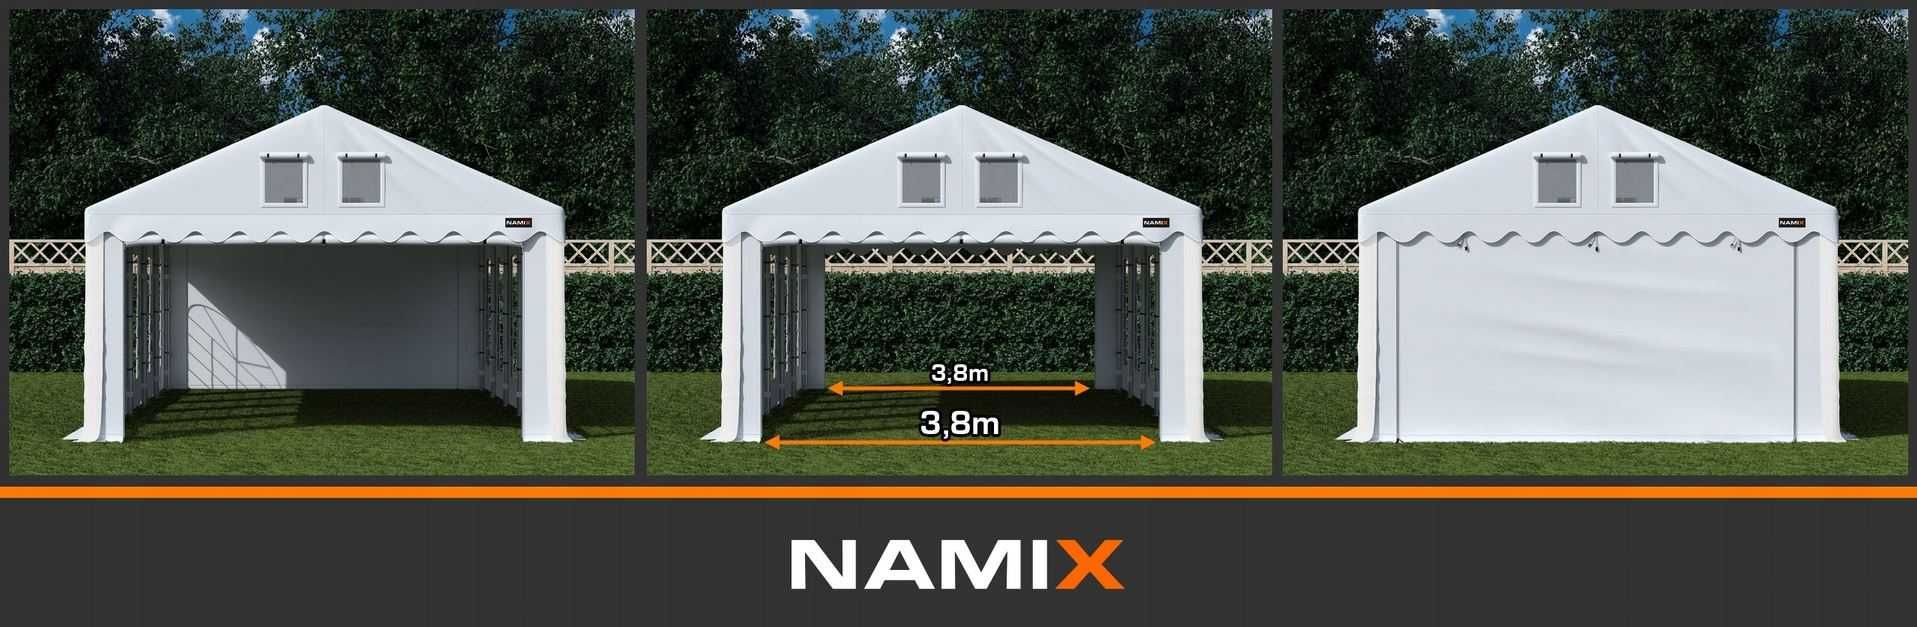 Namiot ROYAL 5x6 ogrodowy imprezowy garaż wzmocniony PVC 560g/m2